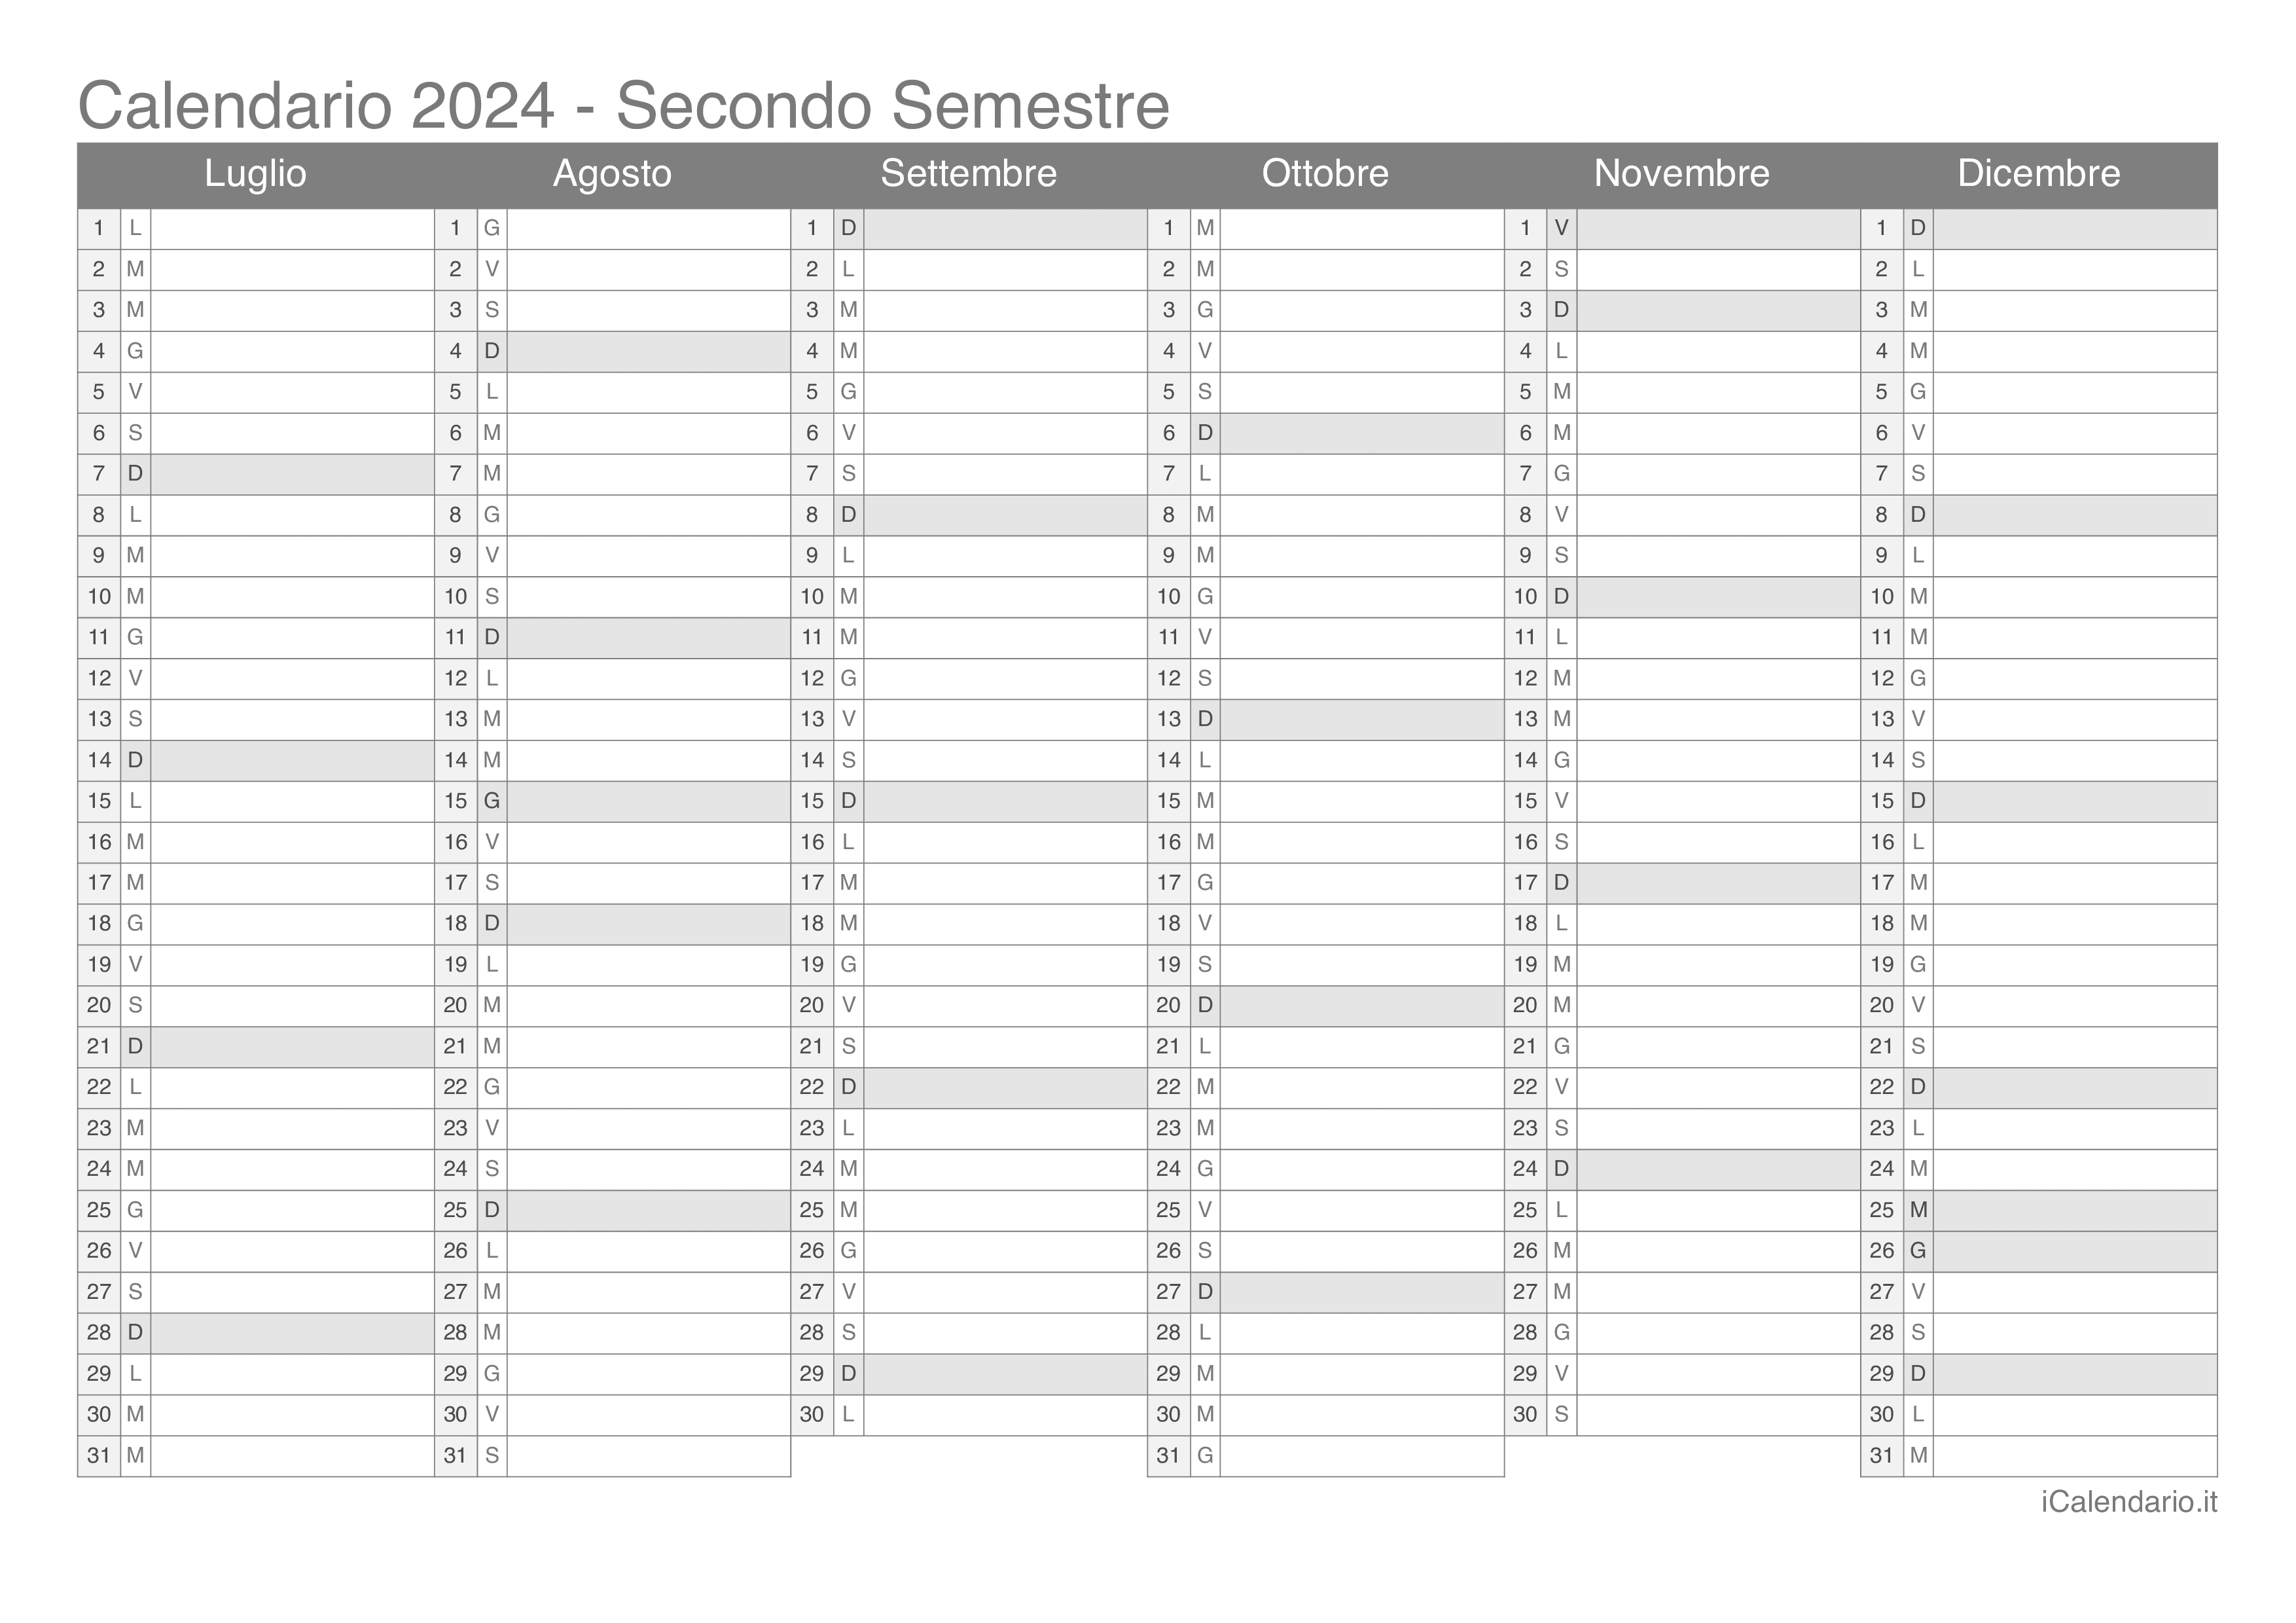 AGENDA 2024 MOTIVAZIONALE / medio commercio / agenda 2024 in spagnolo /  agenda settimanale / agenda stampabile / agenda 2024 / Calendari PDF 2024 -   Italia